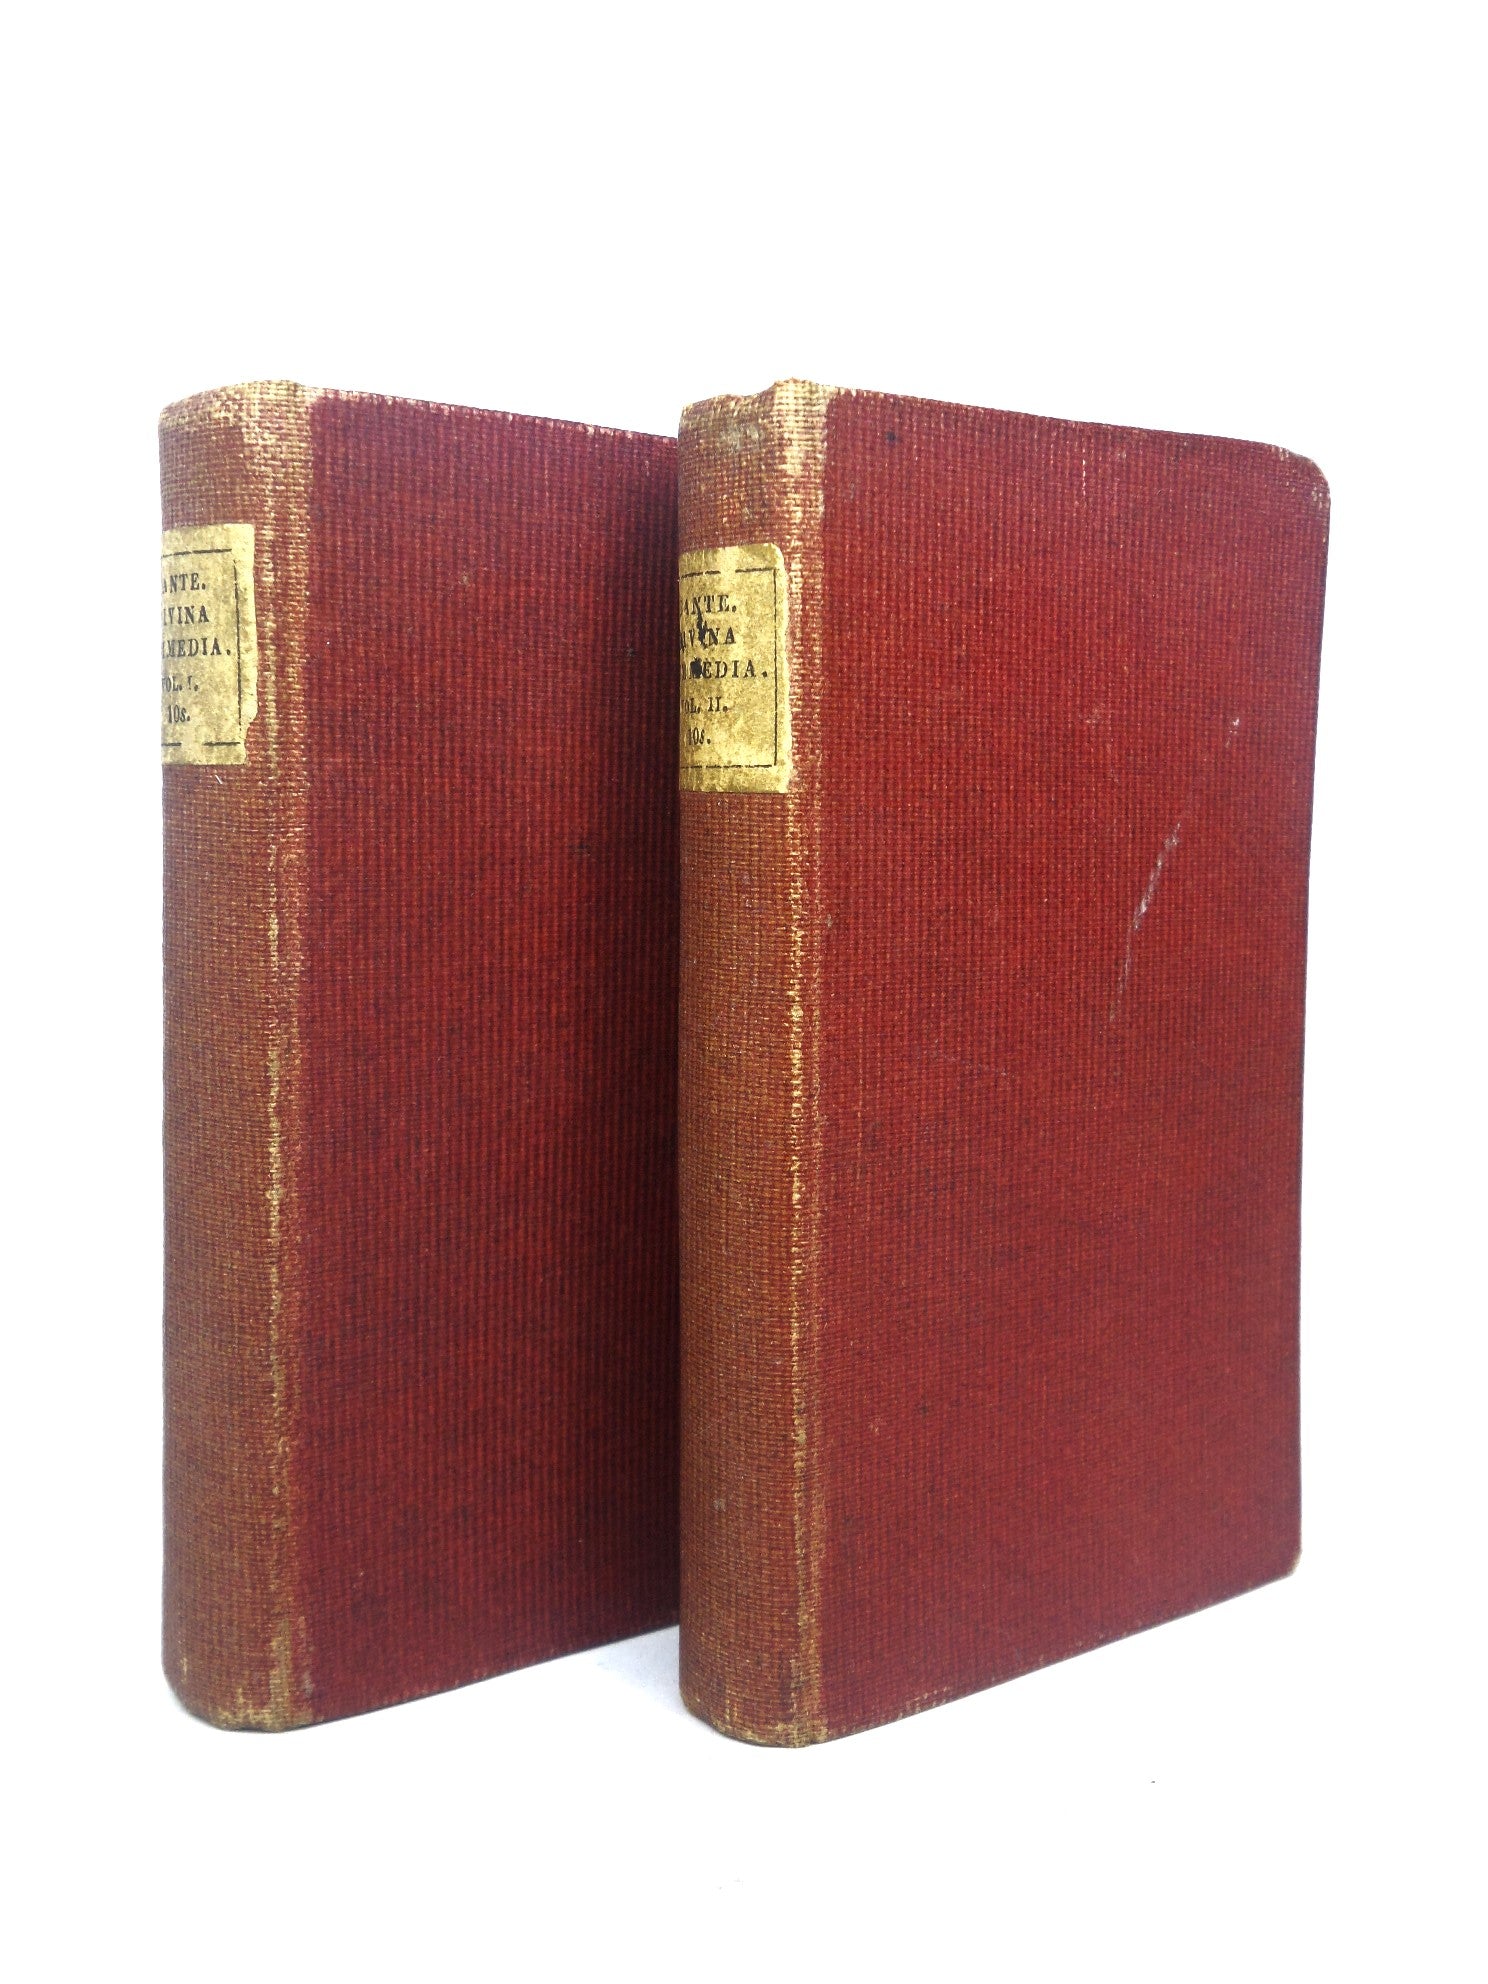 LA DIVINA COMMEDIA BY DANTE ALIGHIERI 1823 IN TWO MINIATURE VOLUMES